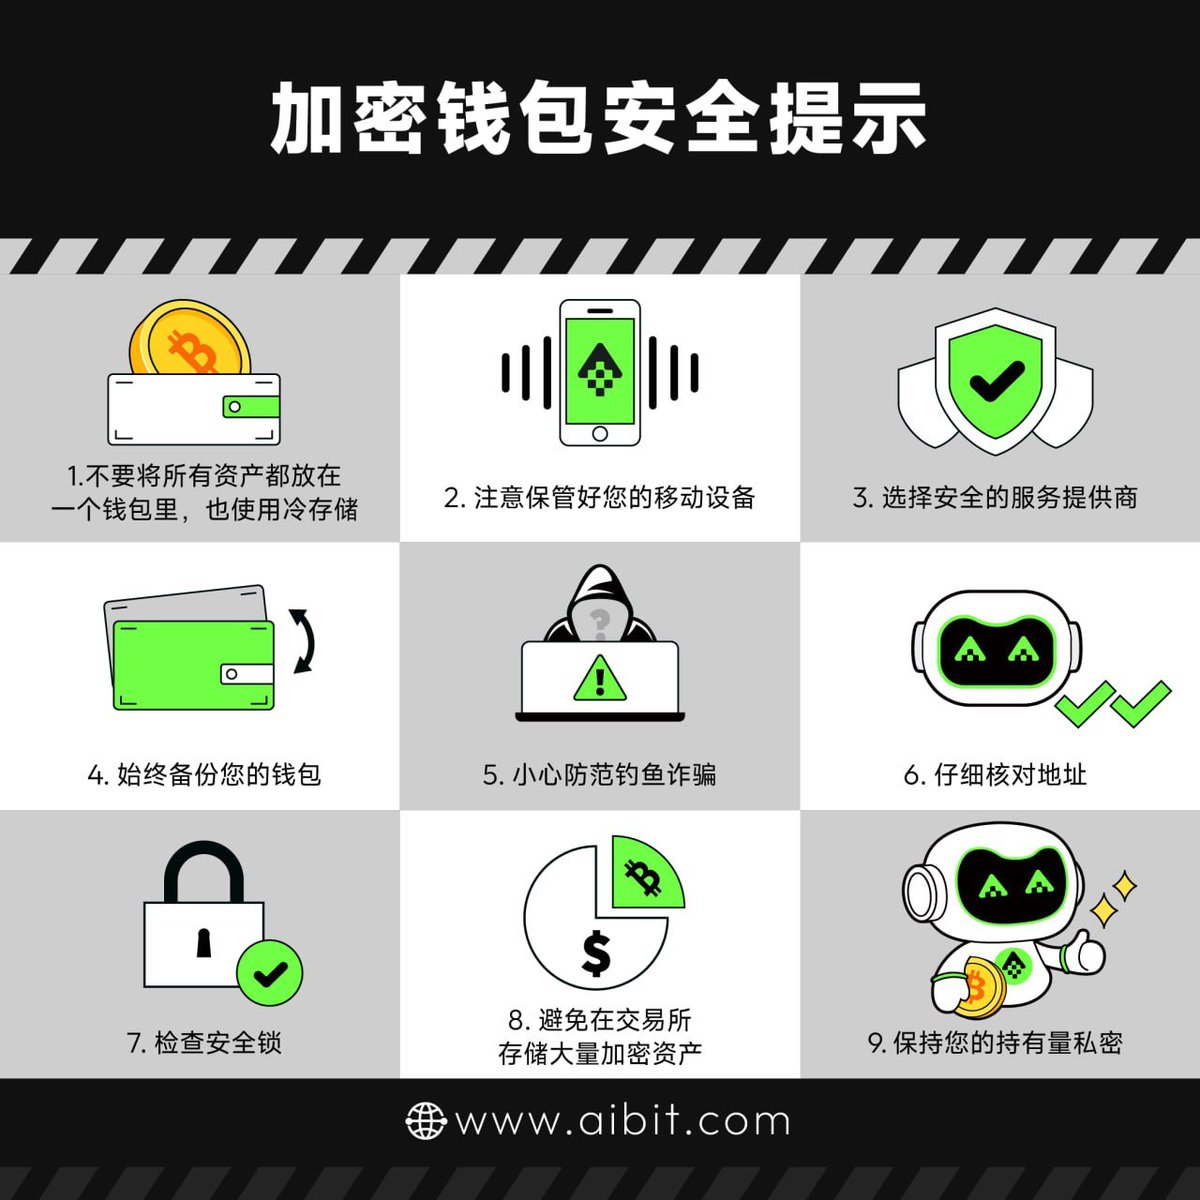 🔐加密钱包安全小提示‼️

⚠️#Aibit 提醒您注意保护您的资产安全！
#Security #CryptoWallet